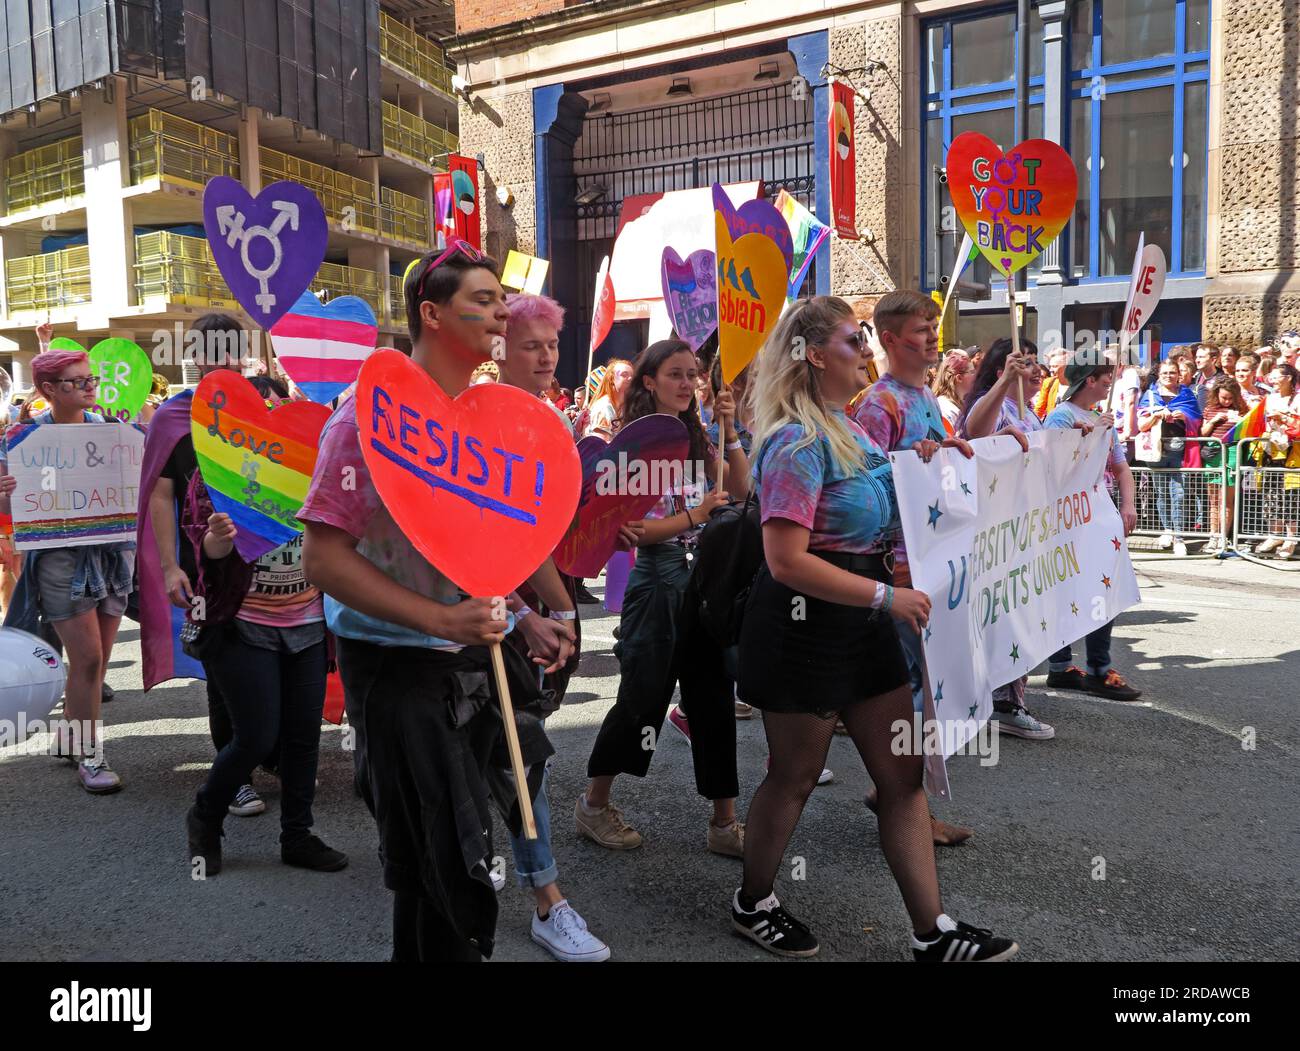 Salford Studentenvereinigung bei der Manchester Pride Festival Parade, 36 Whitworth Street, Manchester, England, Großbritannien, M1 3NR Stockfoto